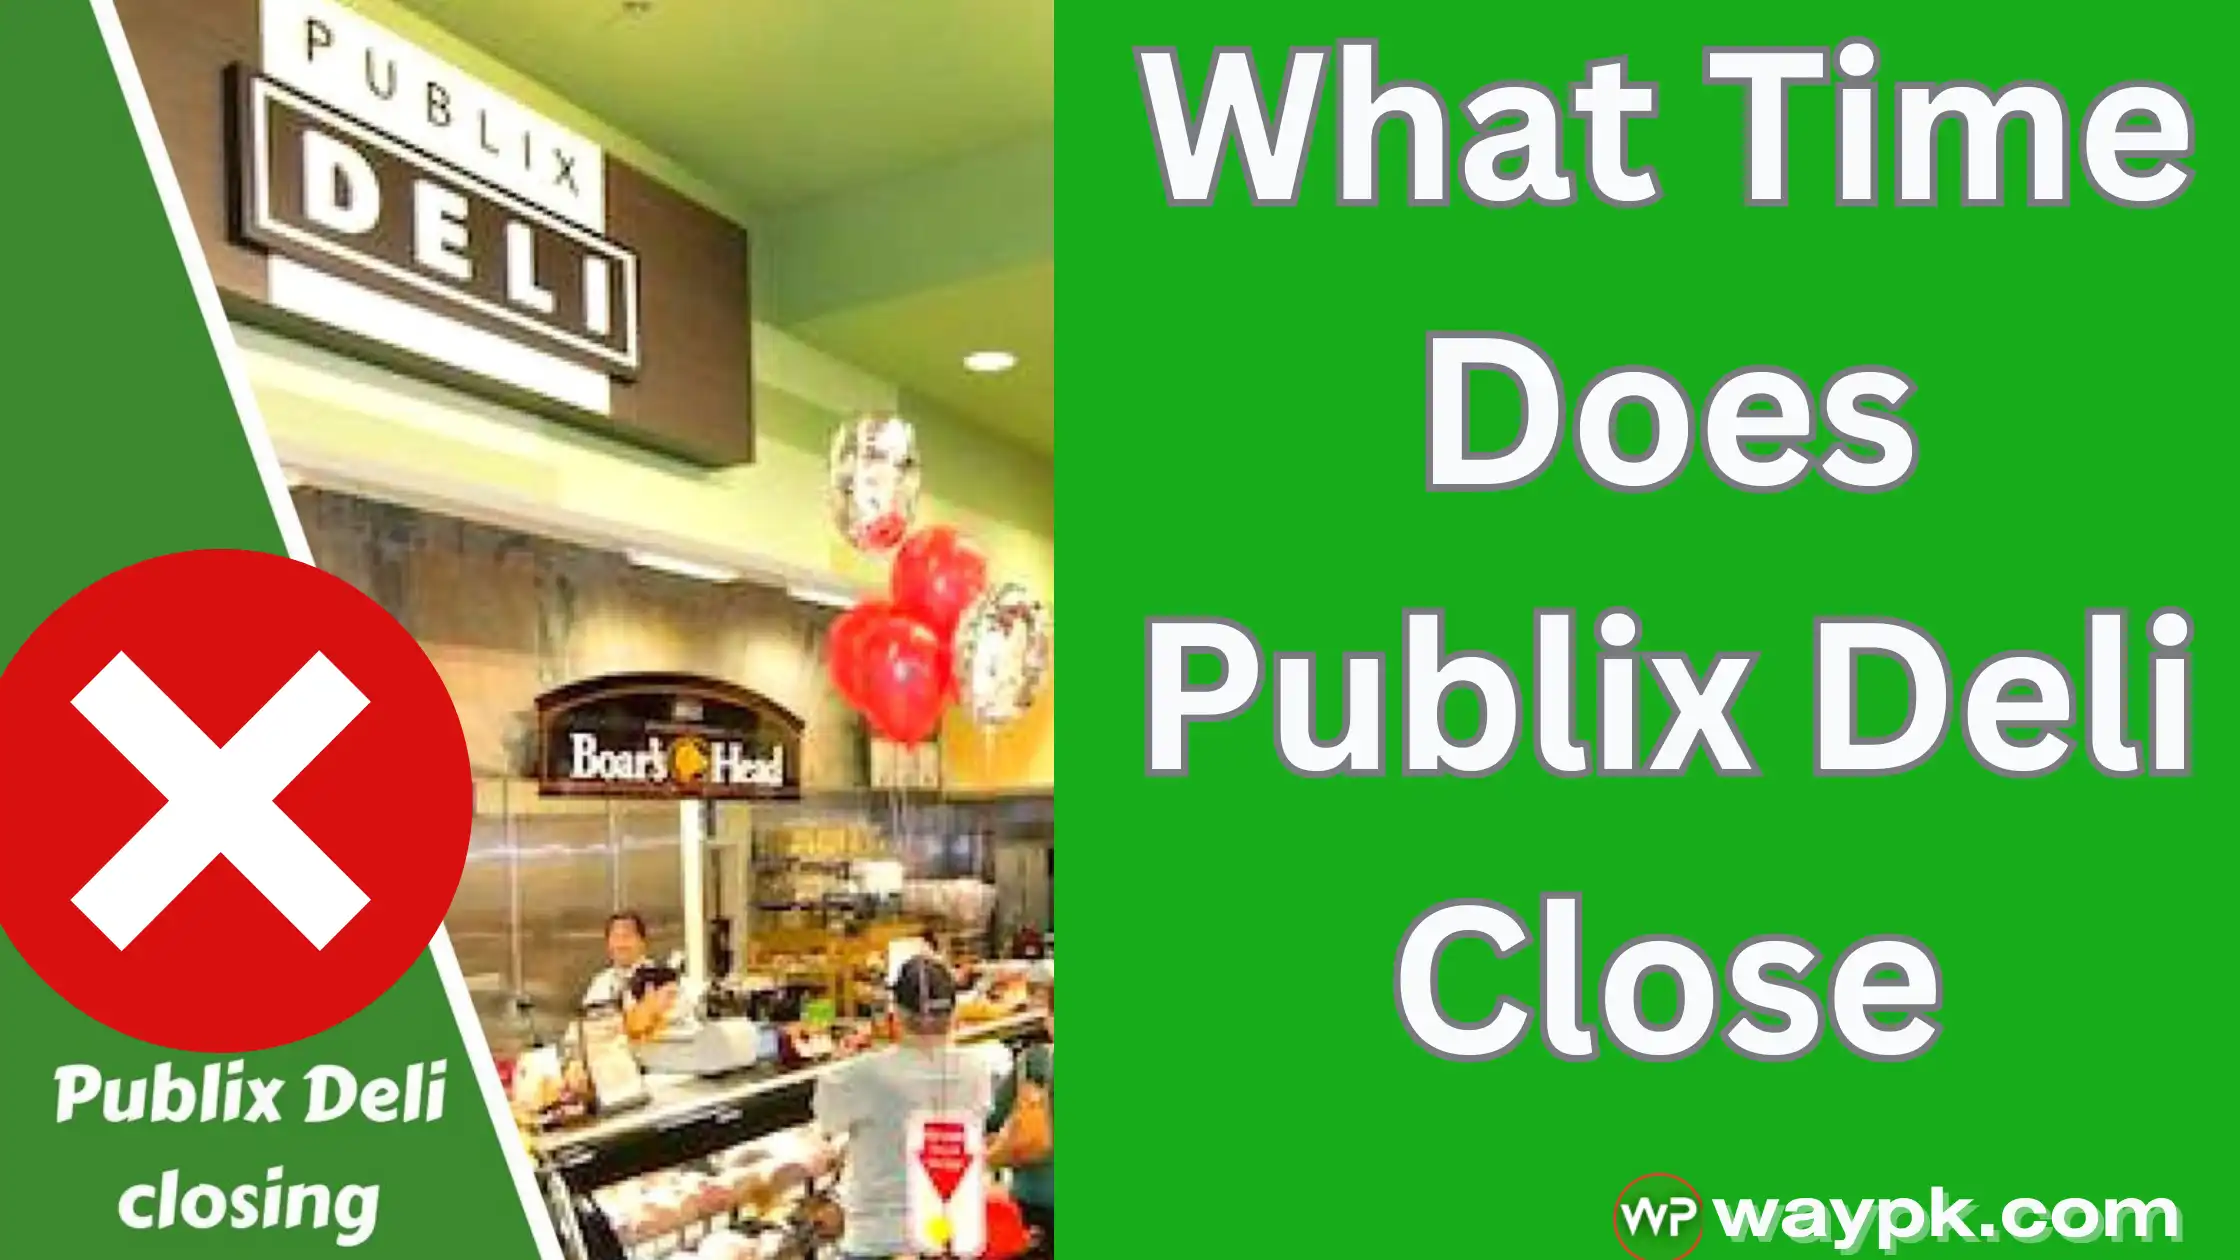 What Time Does Publix Deli Close